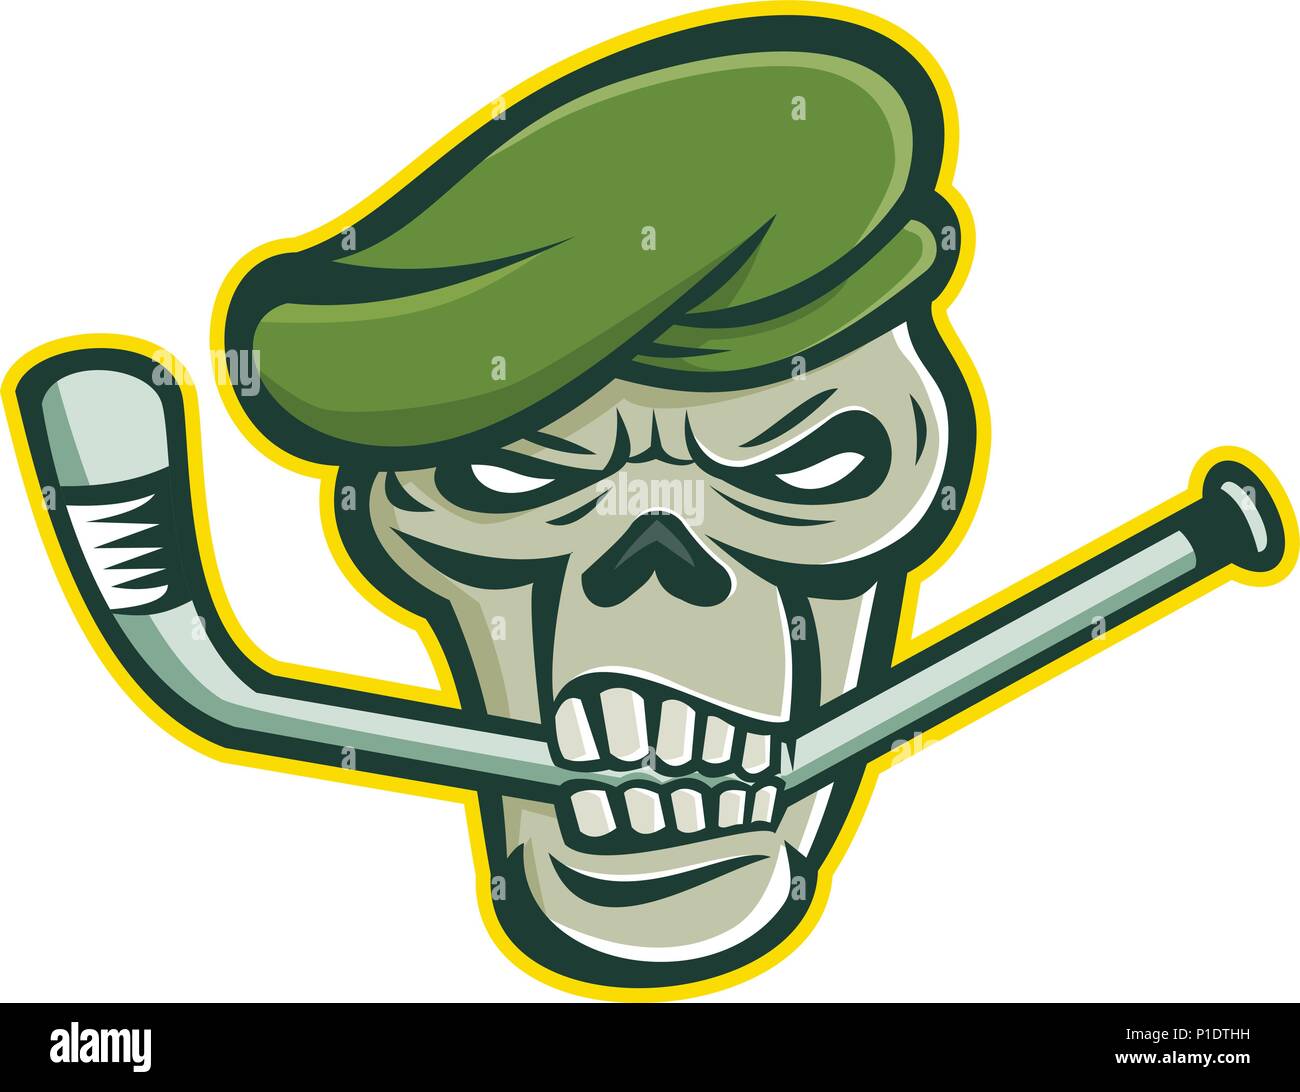 Maskottchen Symbol Abbildung: Schädel Kopf einer Green Beret commando oder Elite leichte Infanterie oder Special forces Soldat beißen ein Eis hockey stick gesehen w Stock Vektor